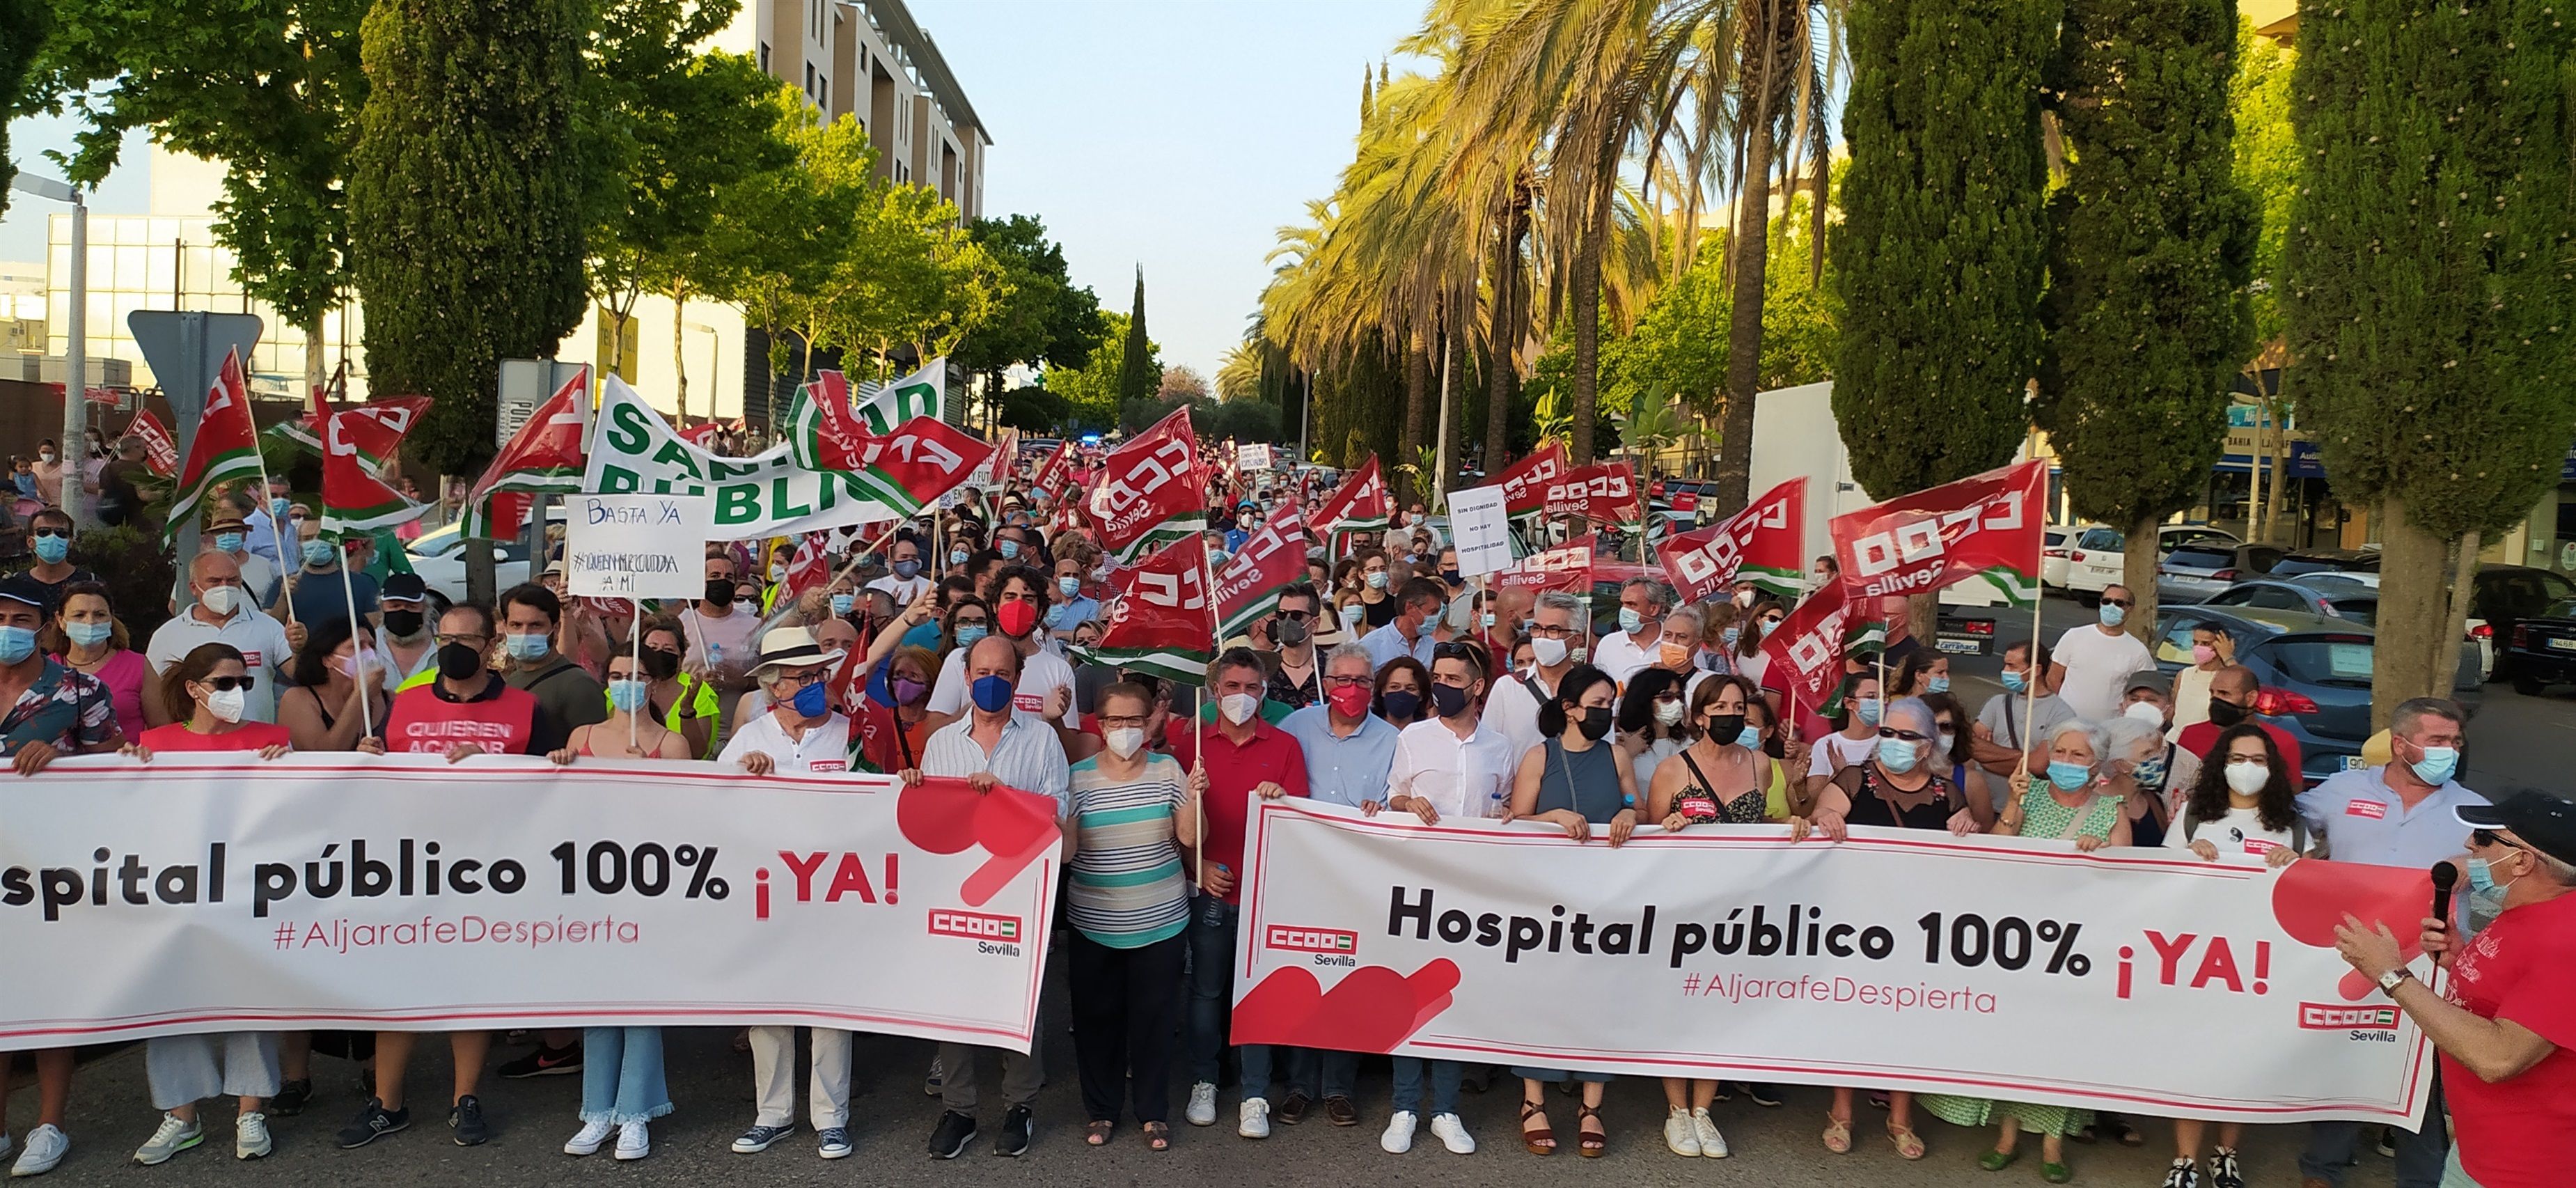 Casi el 48% de los españoles cree que la sanidad pública ha “empeorado” tras la pandemia